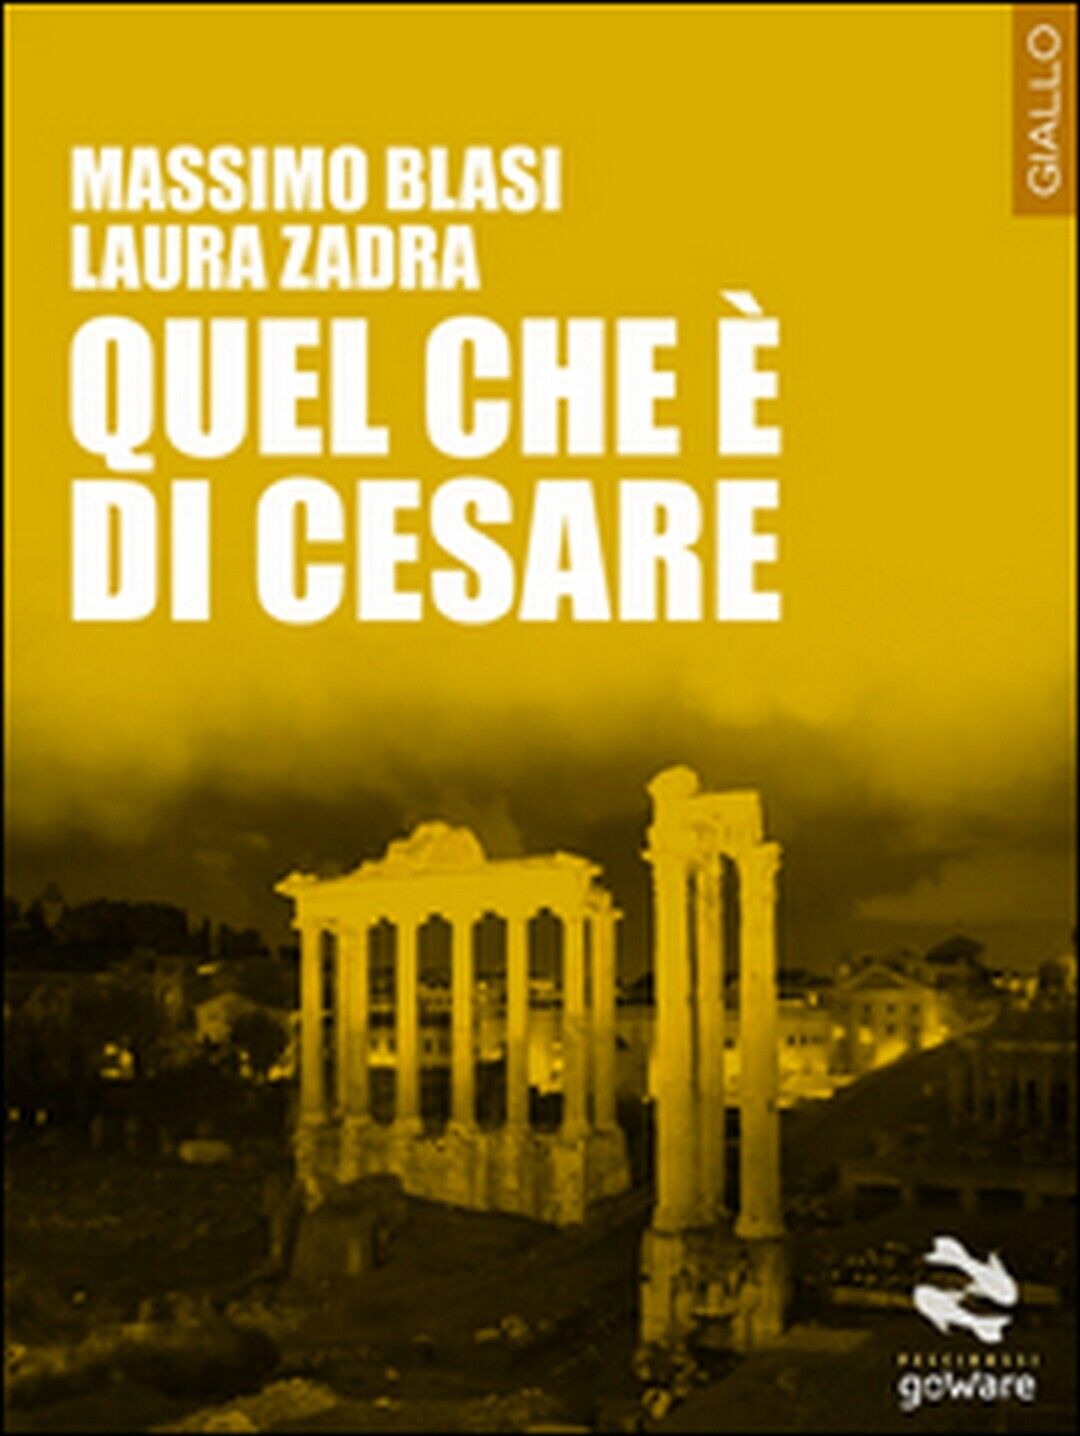 Quel che ? di Cesare  di Massimo Blasi, Laura Zadra,  2015,  Goware